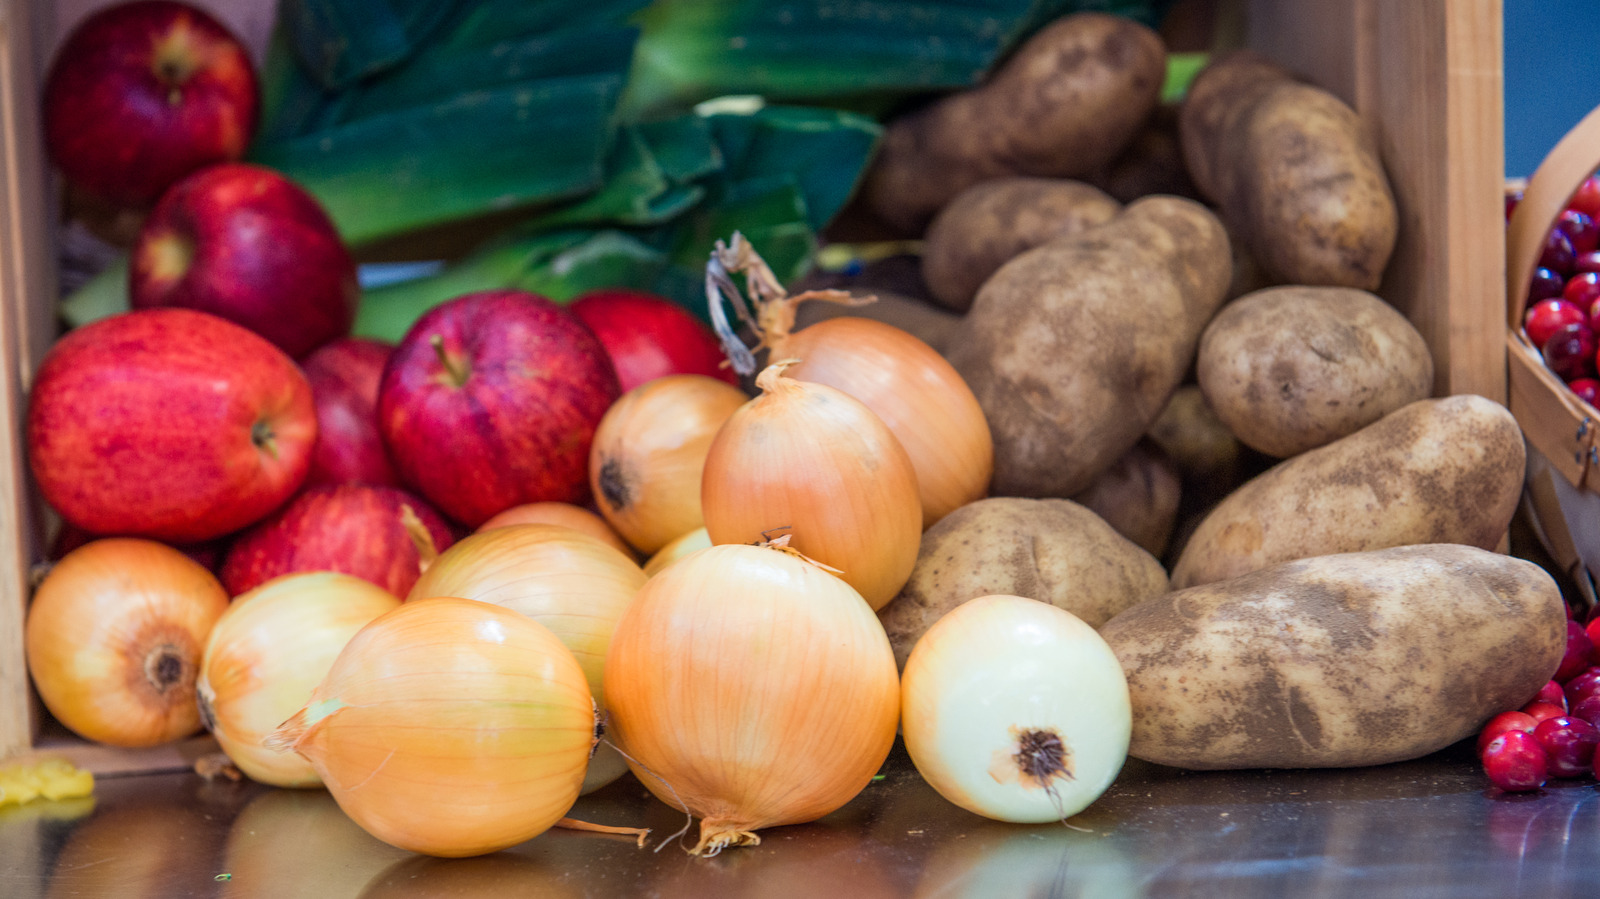 البصل والتفاح والبطاطس: ما الذي يمكنني تخزينه معًا؟